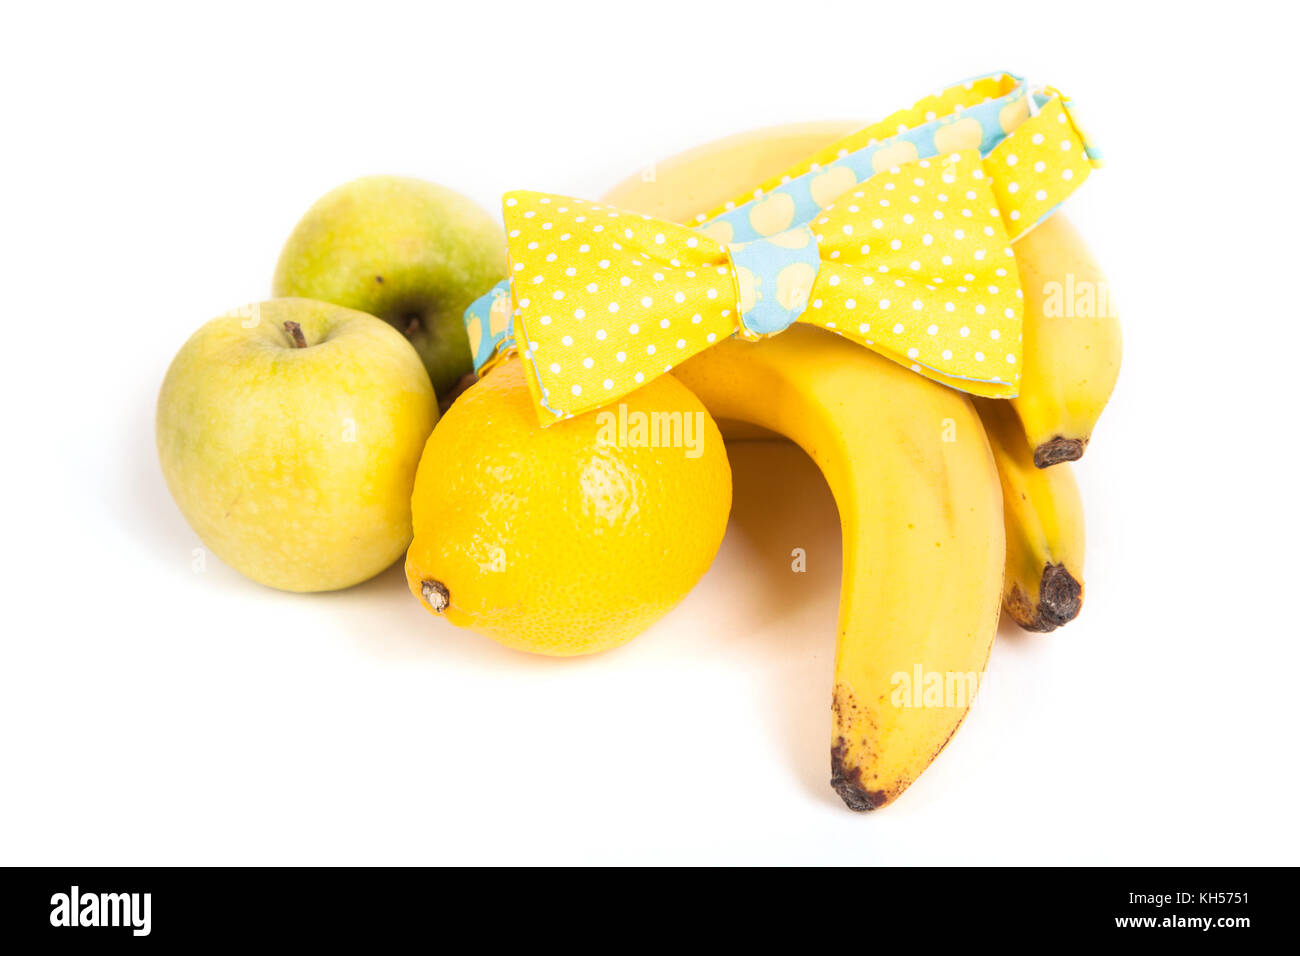 Composition, un noeud papillon jaune se trouve sur le côté de la banane, pommes jaunes, entre le citron Banque D'Images